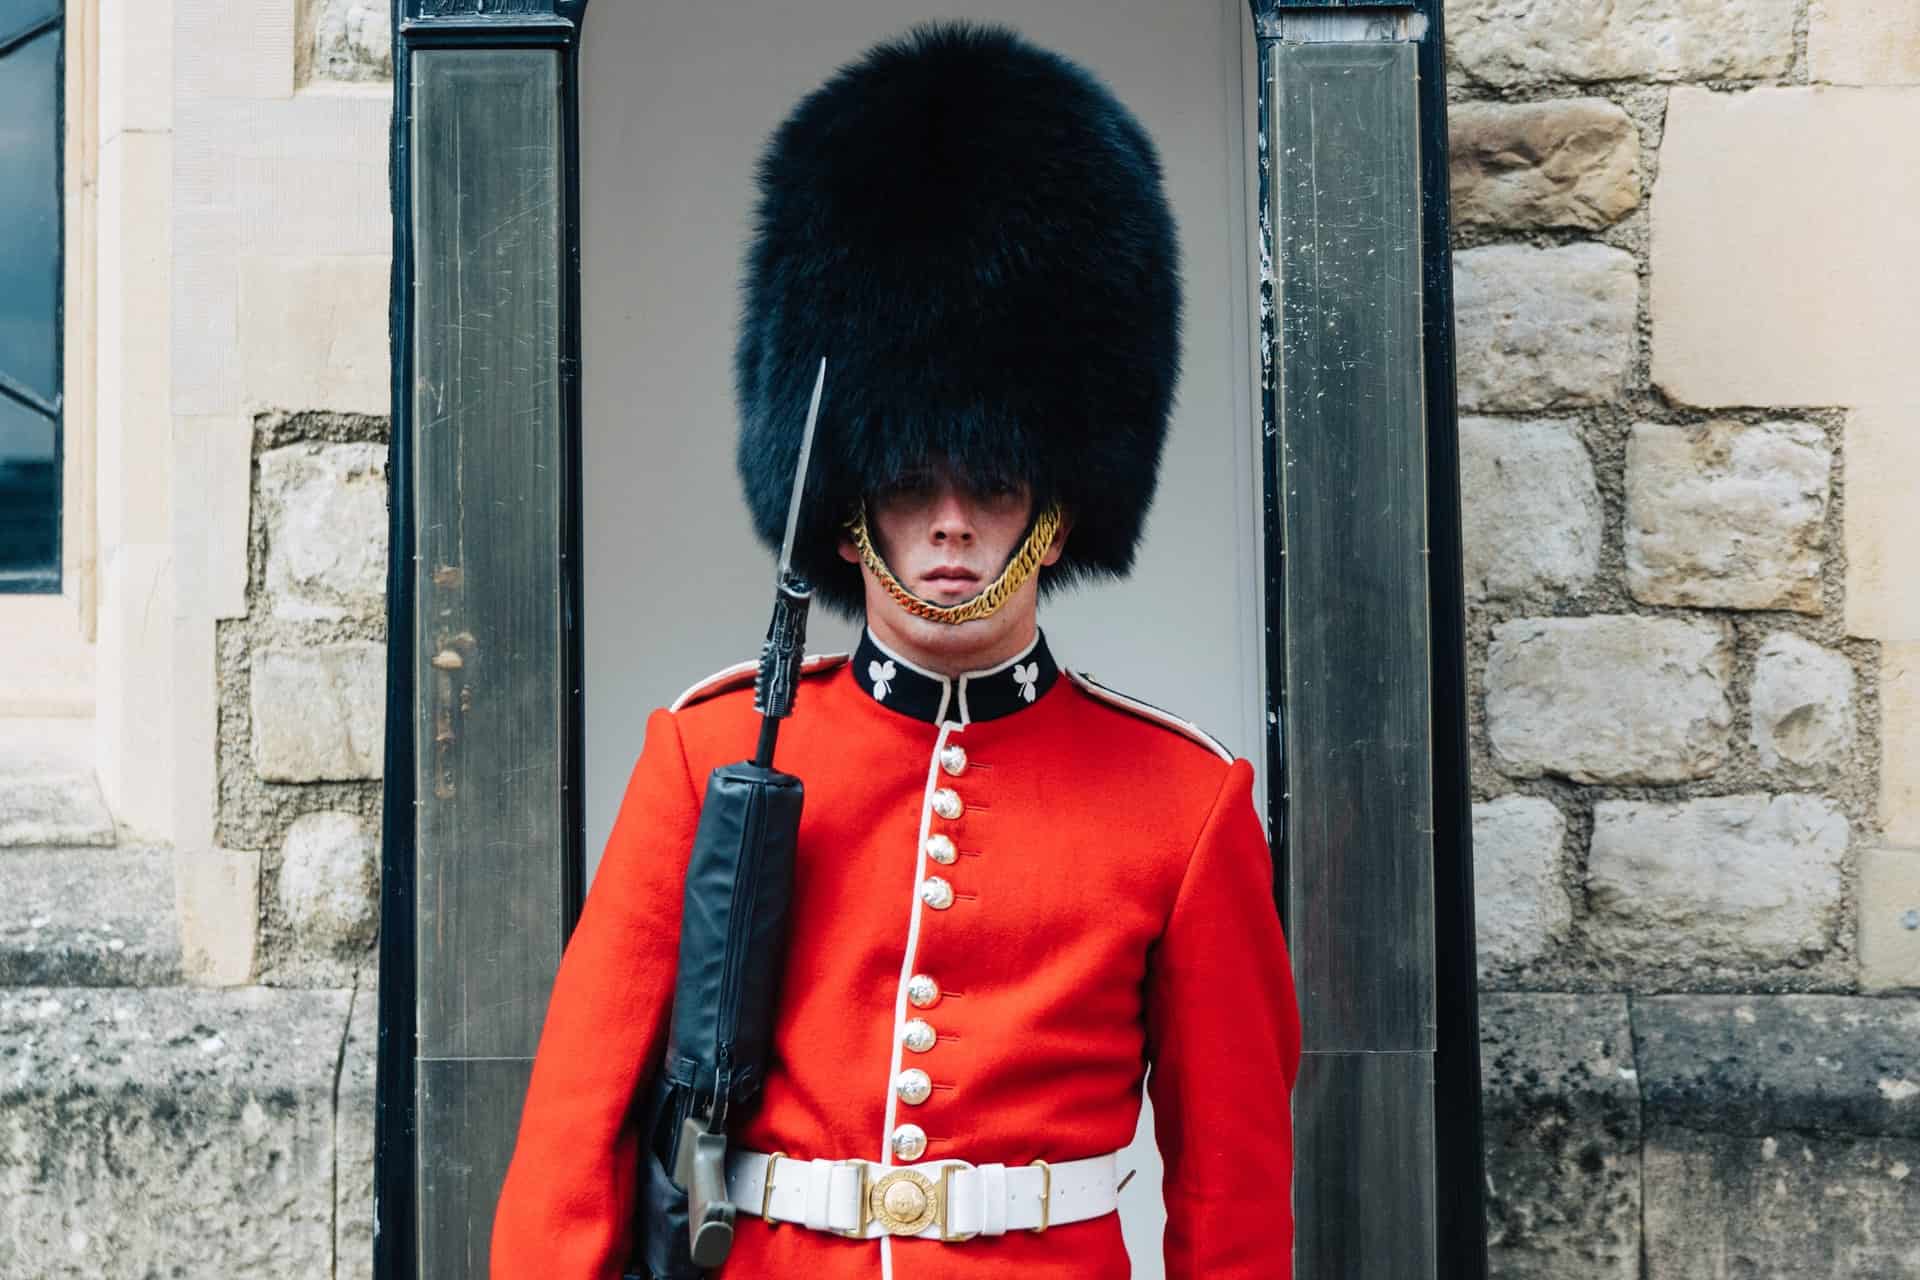 Best things to do in London UK - Josh Symons - Royal Guard by Aldo De La Paz on Unsplash